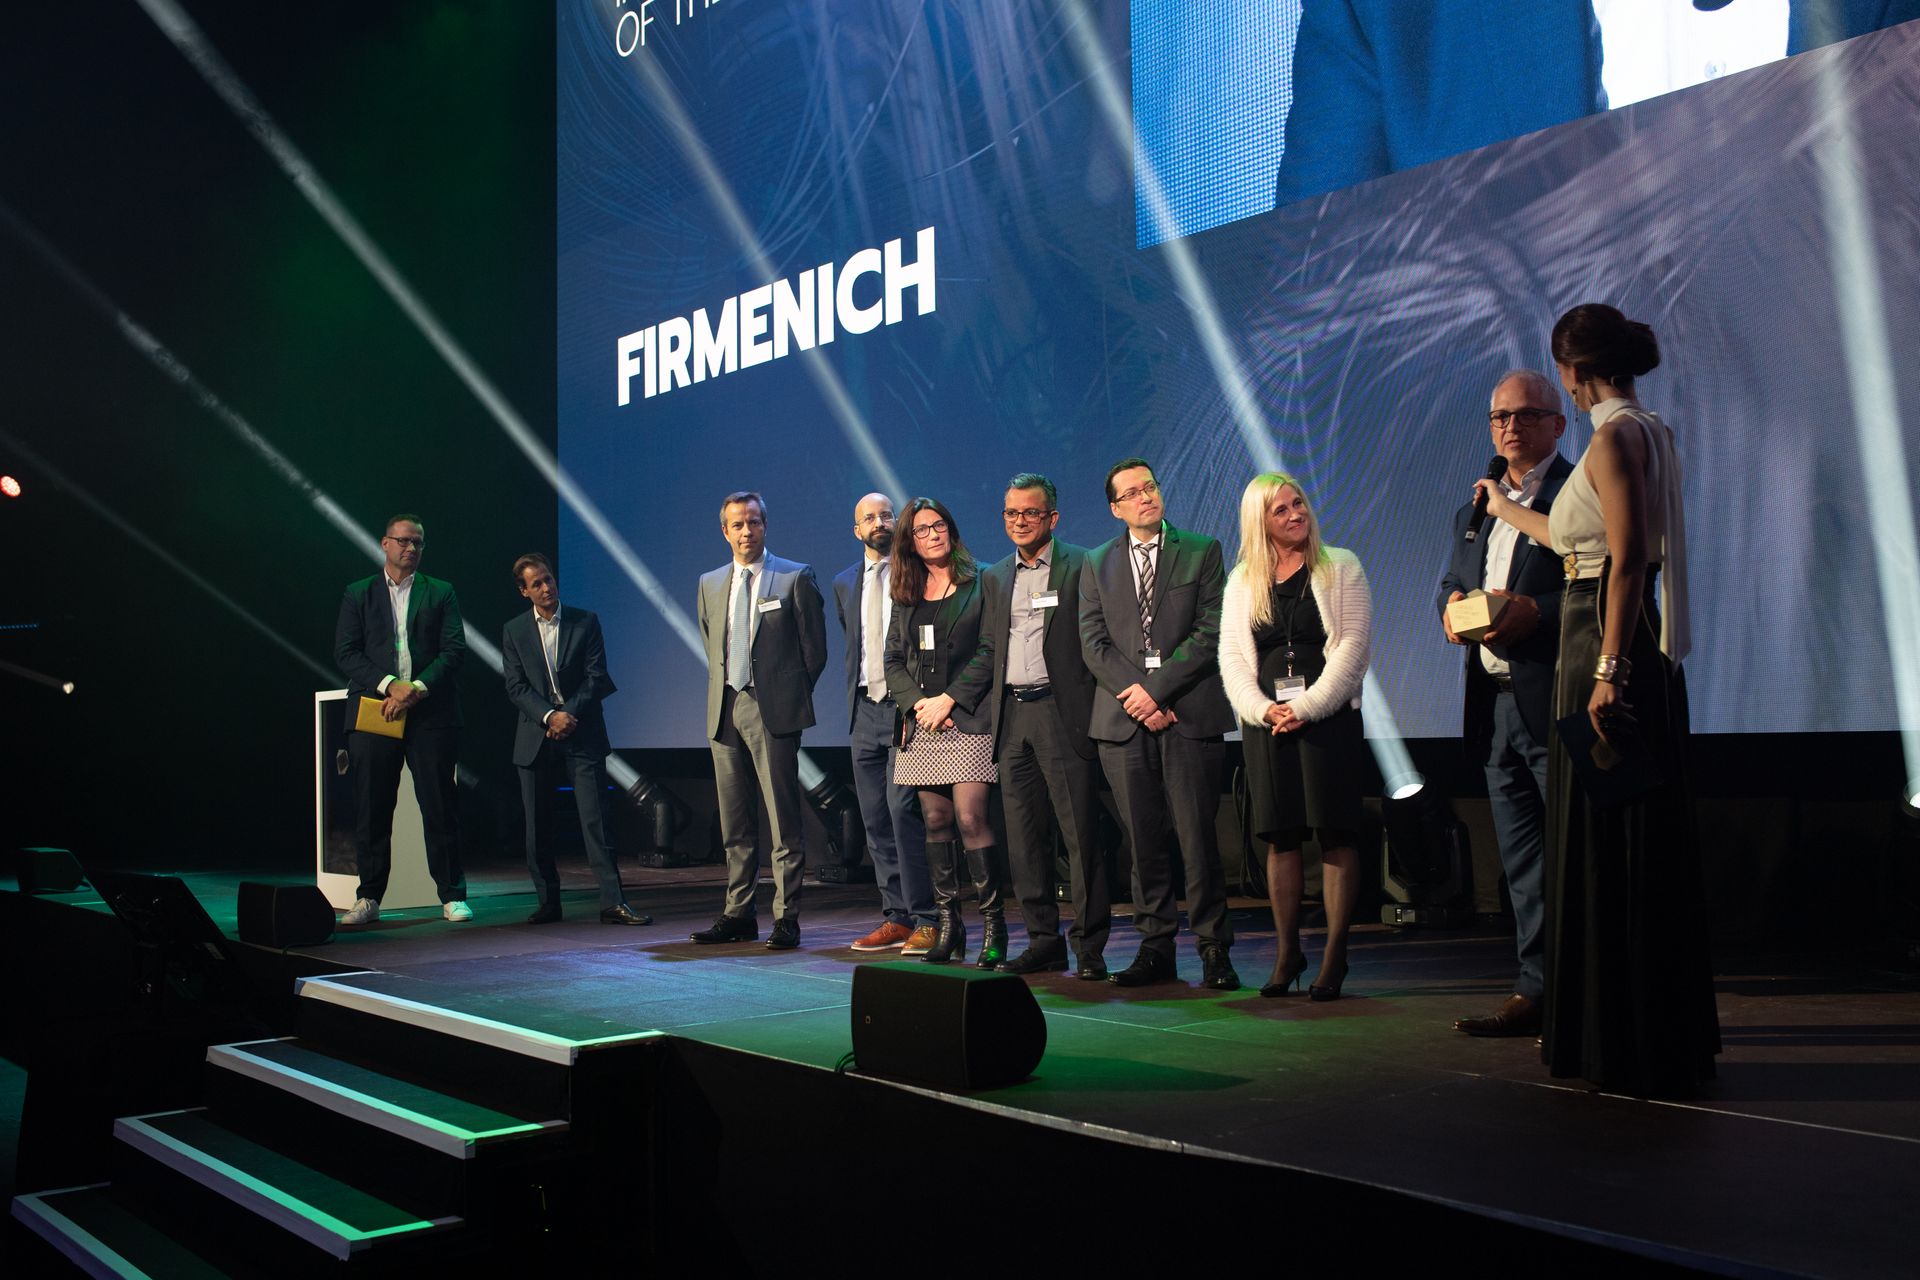 La società "Firmenich" si è aggiudicata il premio "Digital Innovation of the Year" alla premiazione dei "Digital Economy Award" della Svizzera